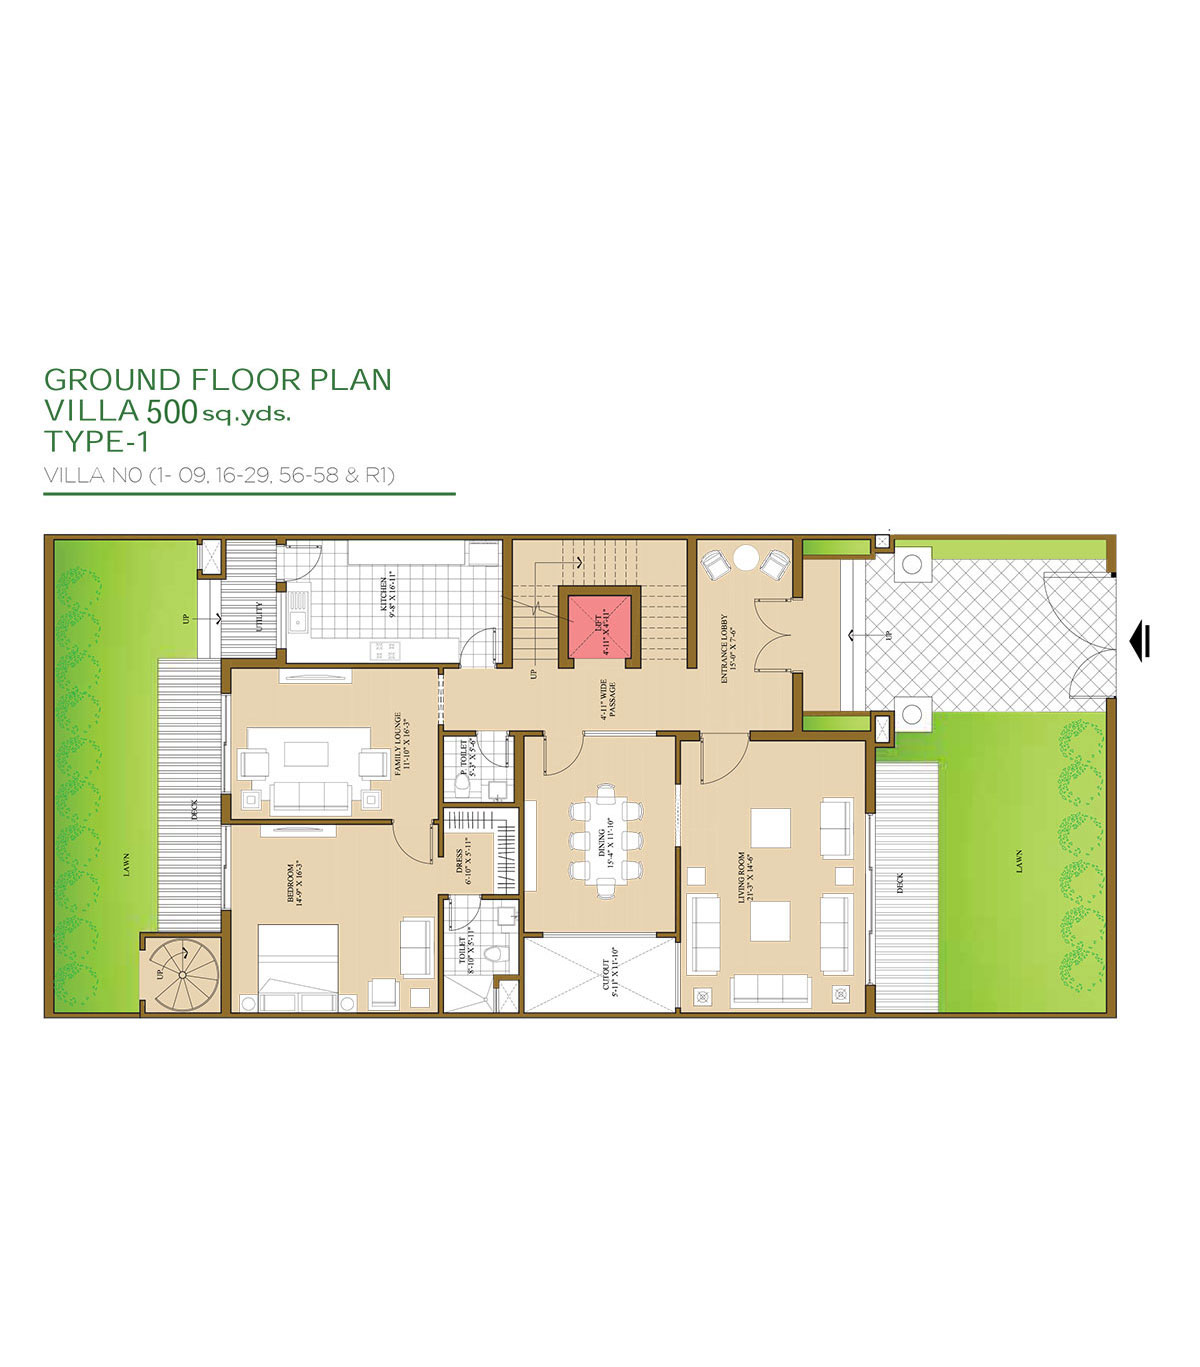 Villa - 500 Sq.Yds (Ground Floor Plan)